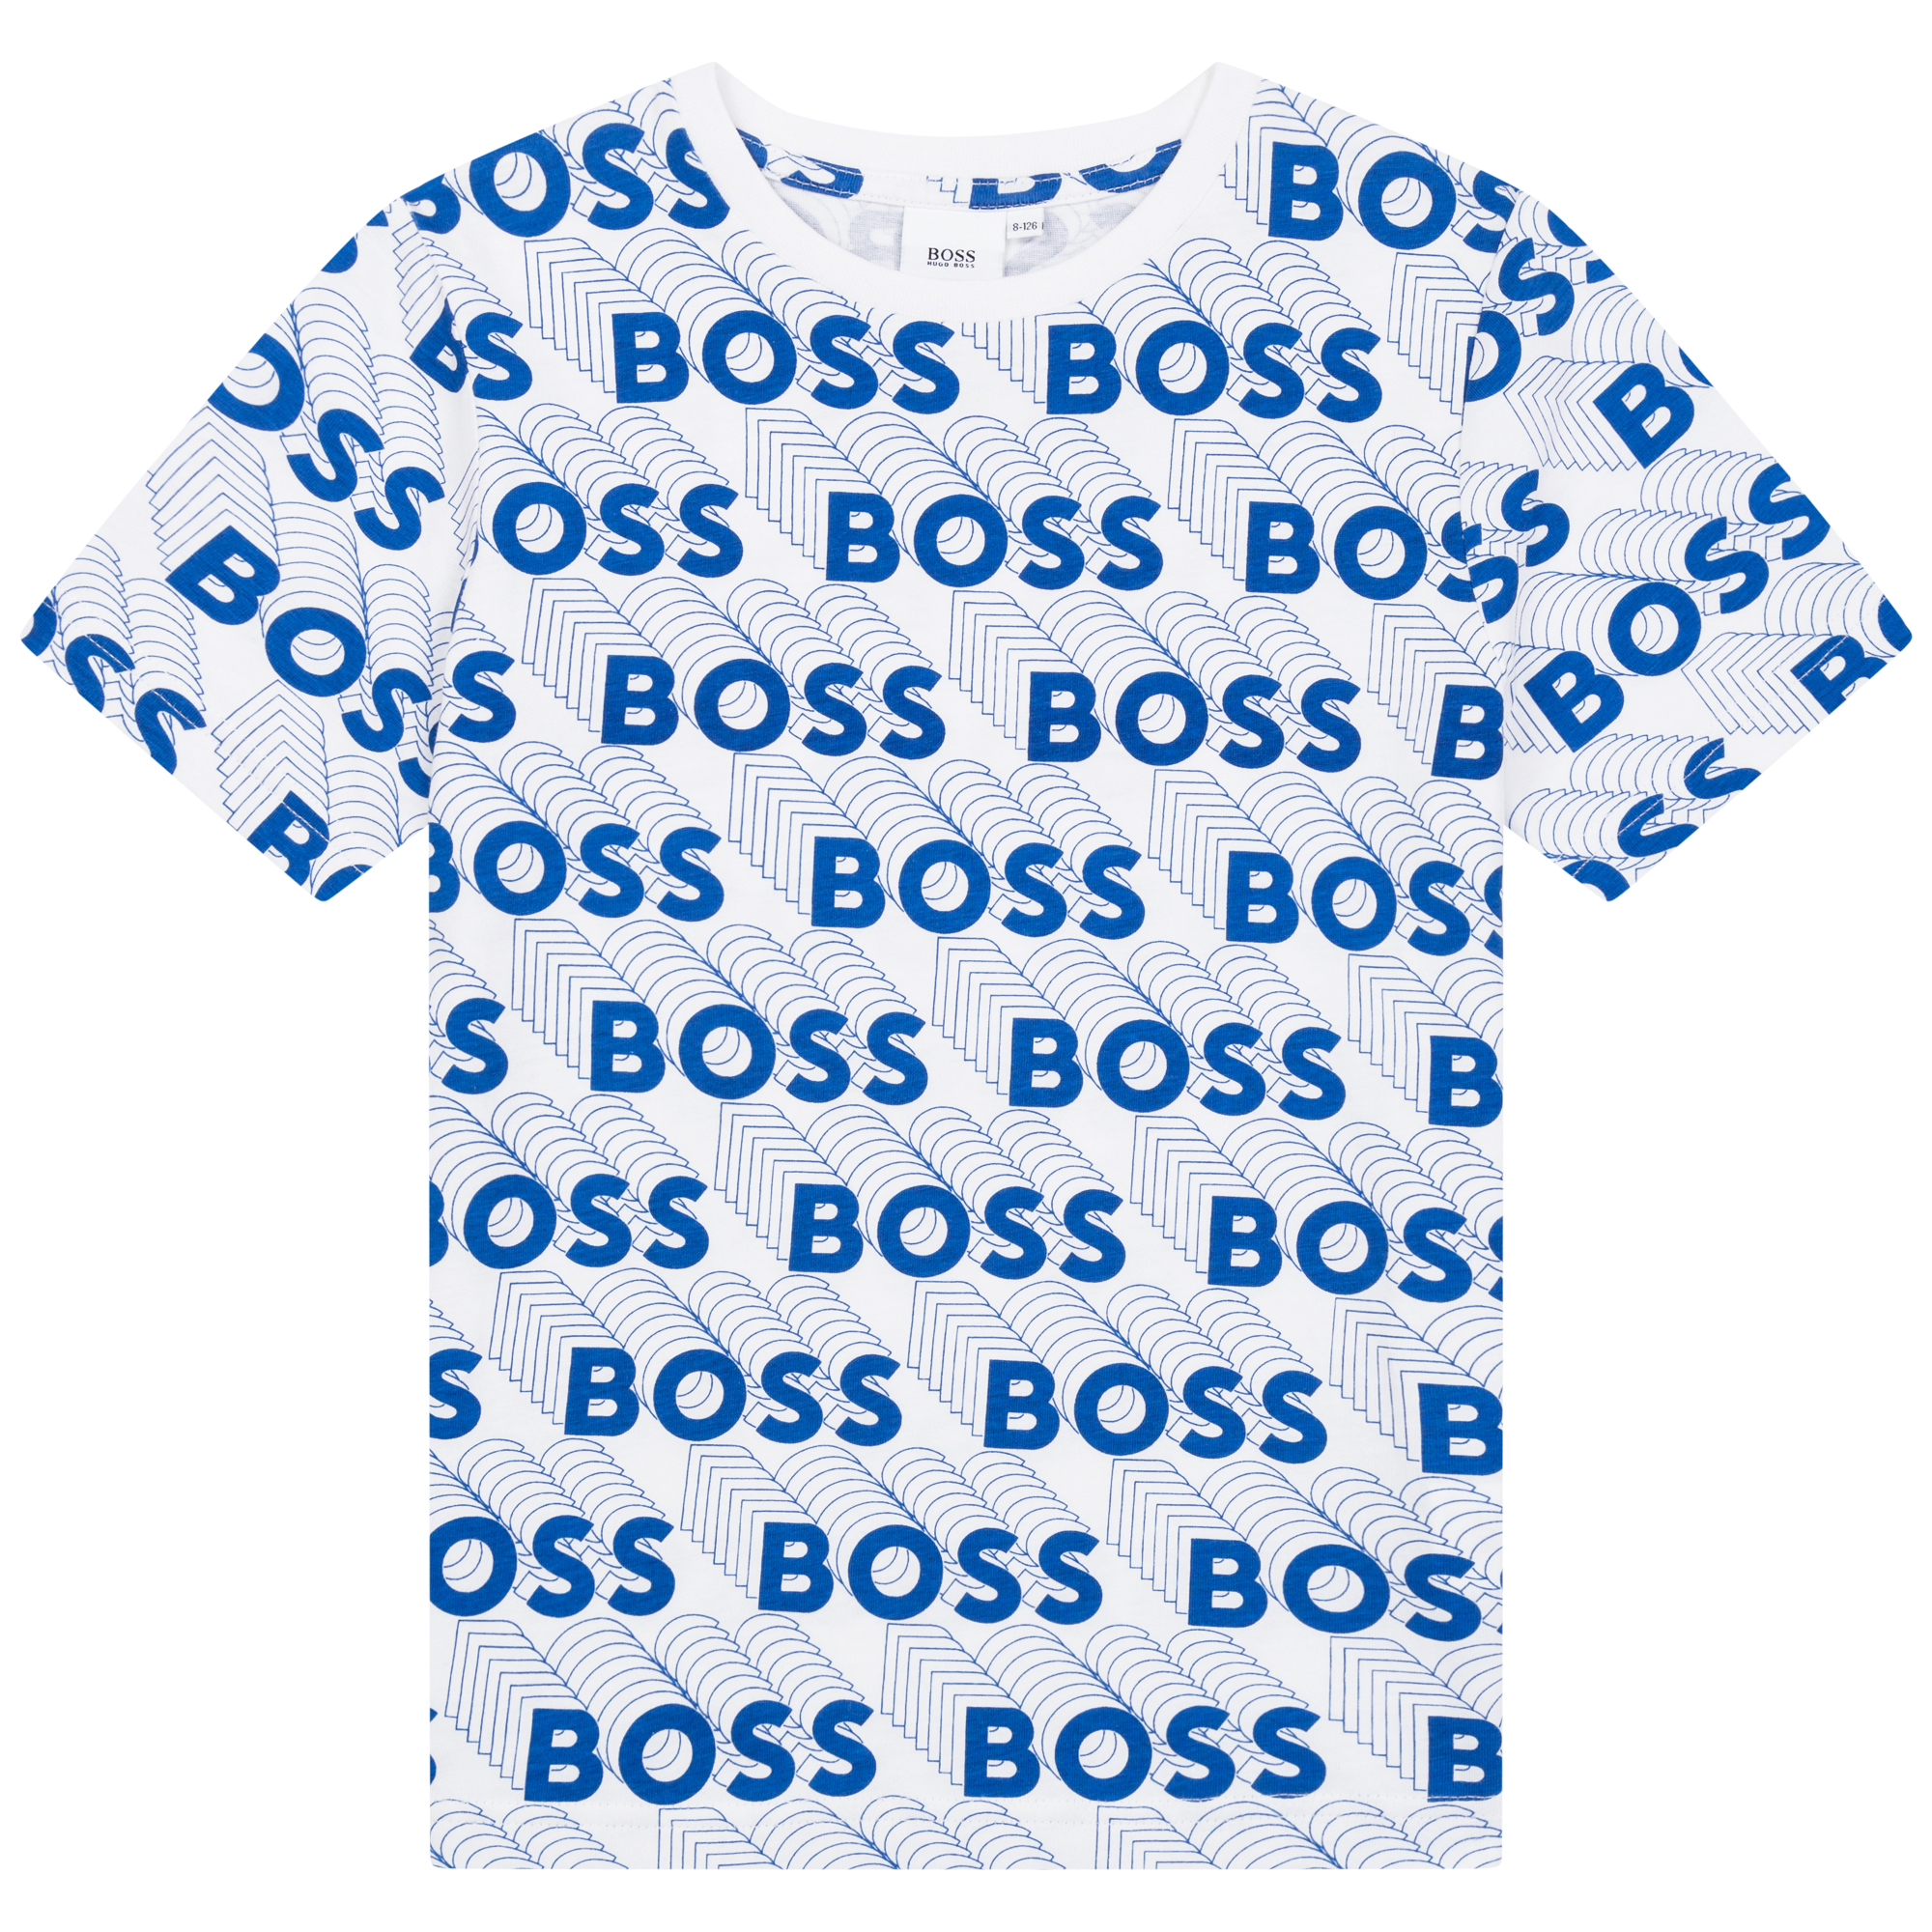 Short-sleeved jersey t-shirt BOSS for BOY